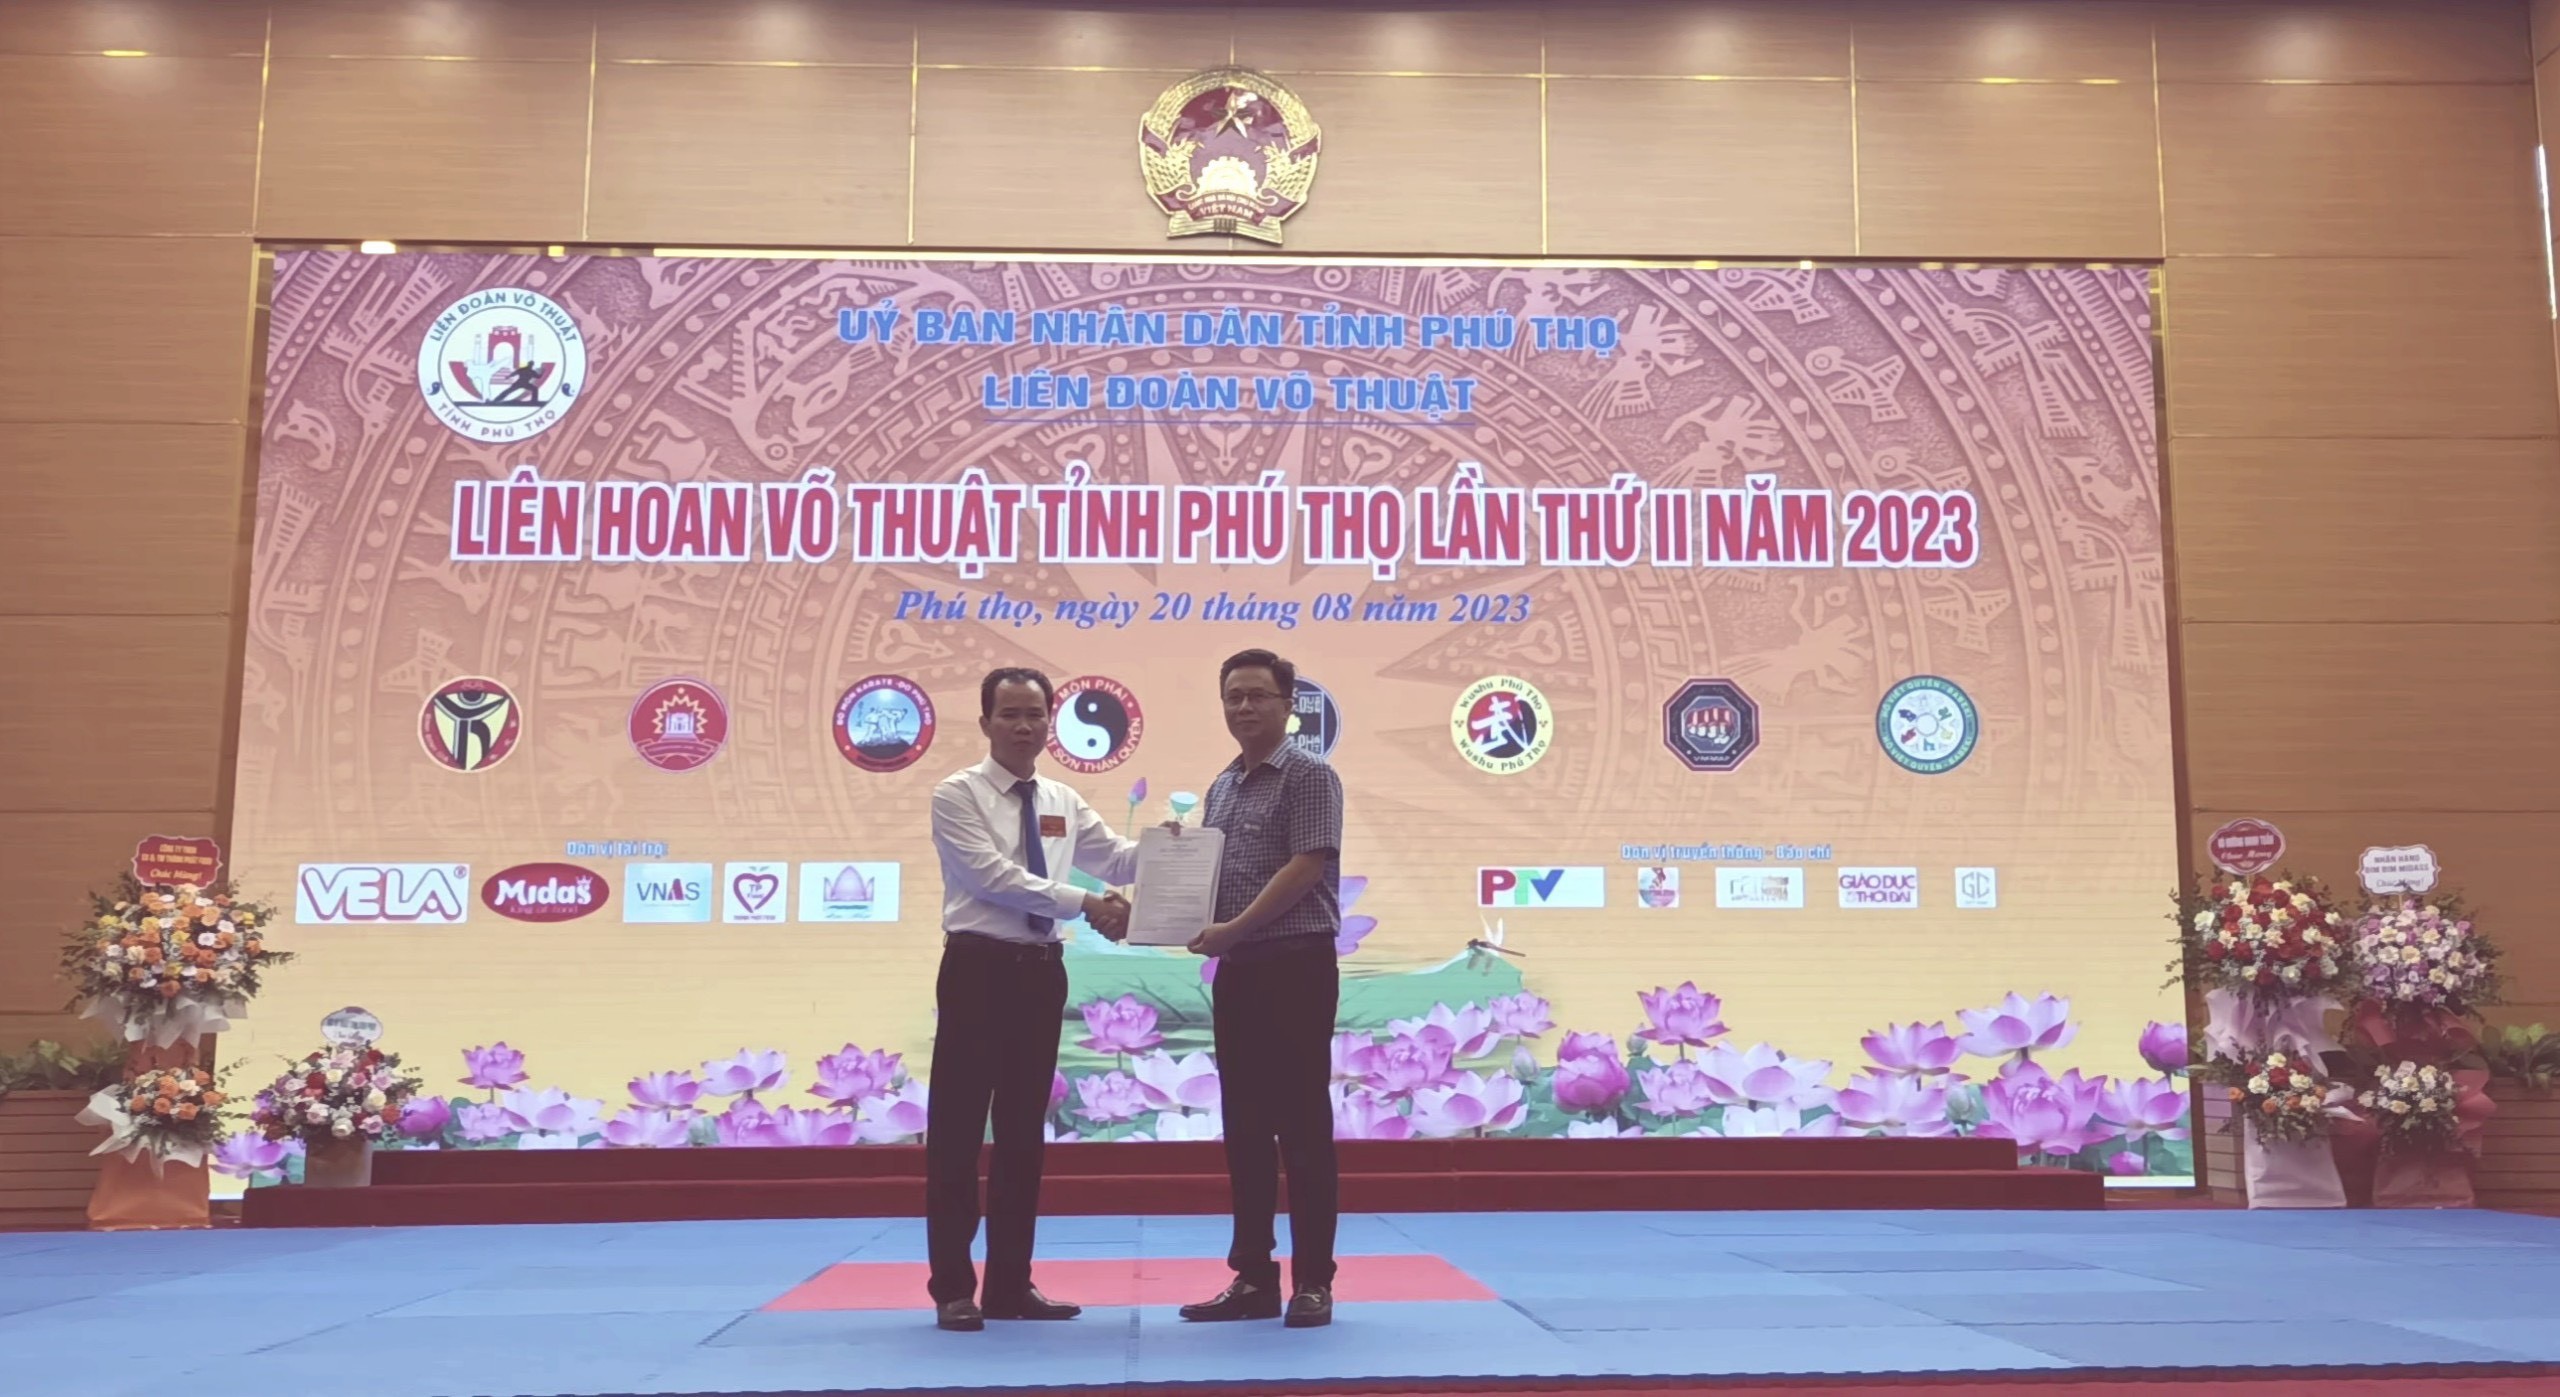 TTại Liên hoan Võ thuật tỉnh Phú Thọ năm 2023 VNAS và Liên đoàn Võ thuật tỉnh Phú Thọ đã ký kết hợp tác về tuyển sinh liên kết đào tạo nghề hàng không